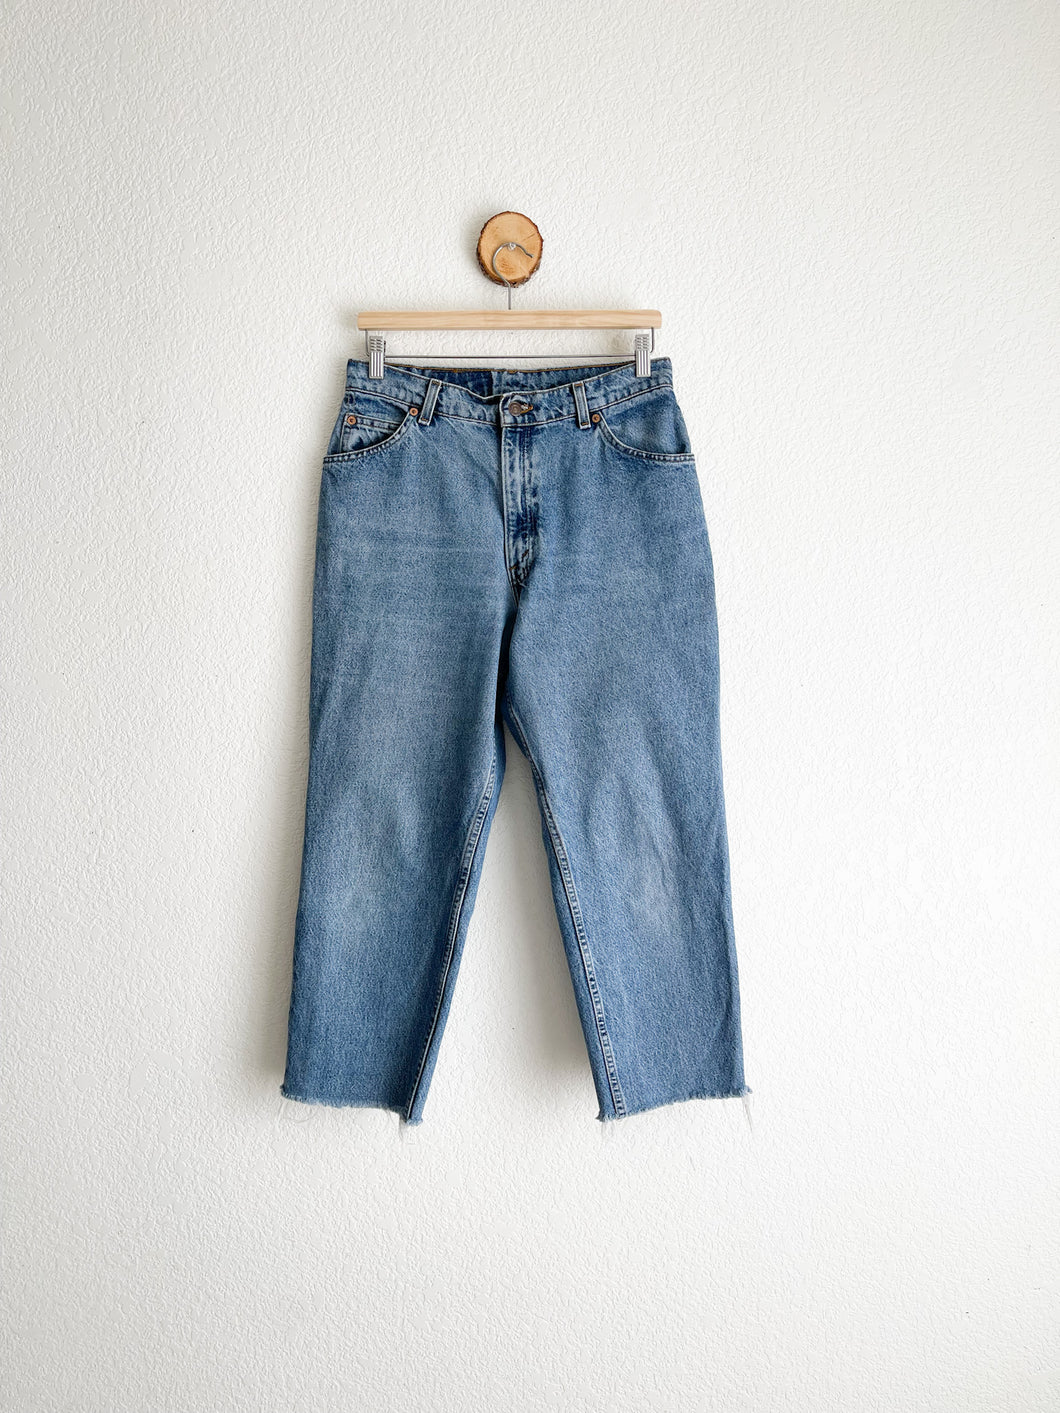 Vintage Levi's 15951 Jeans - 30.5